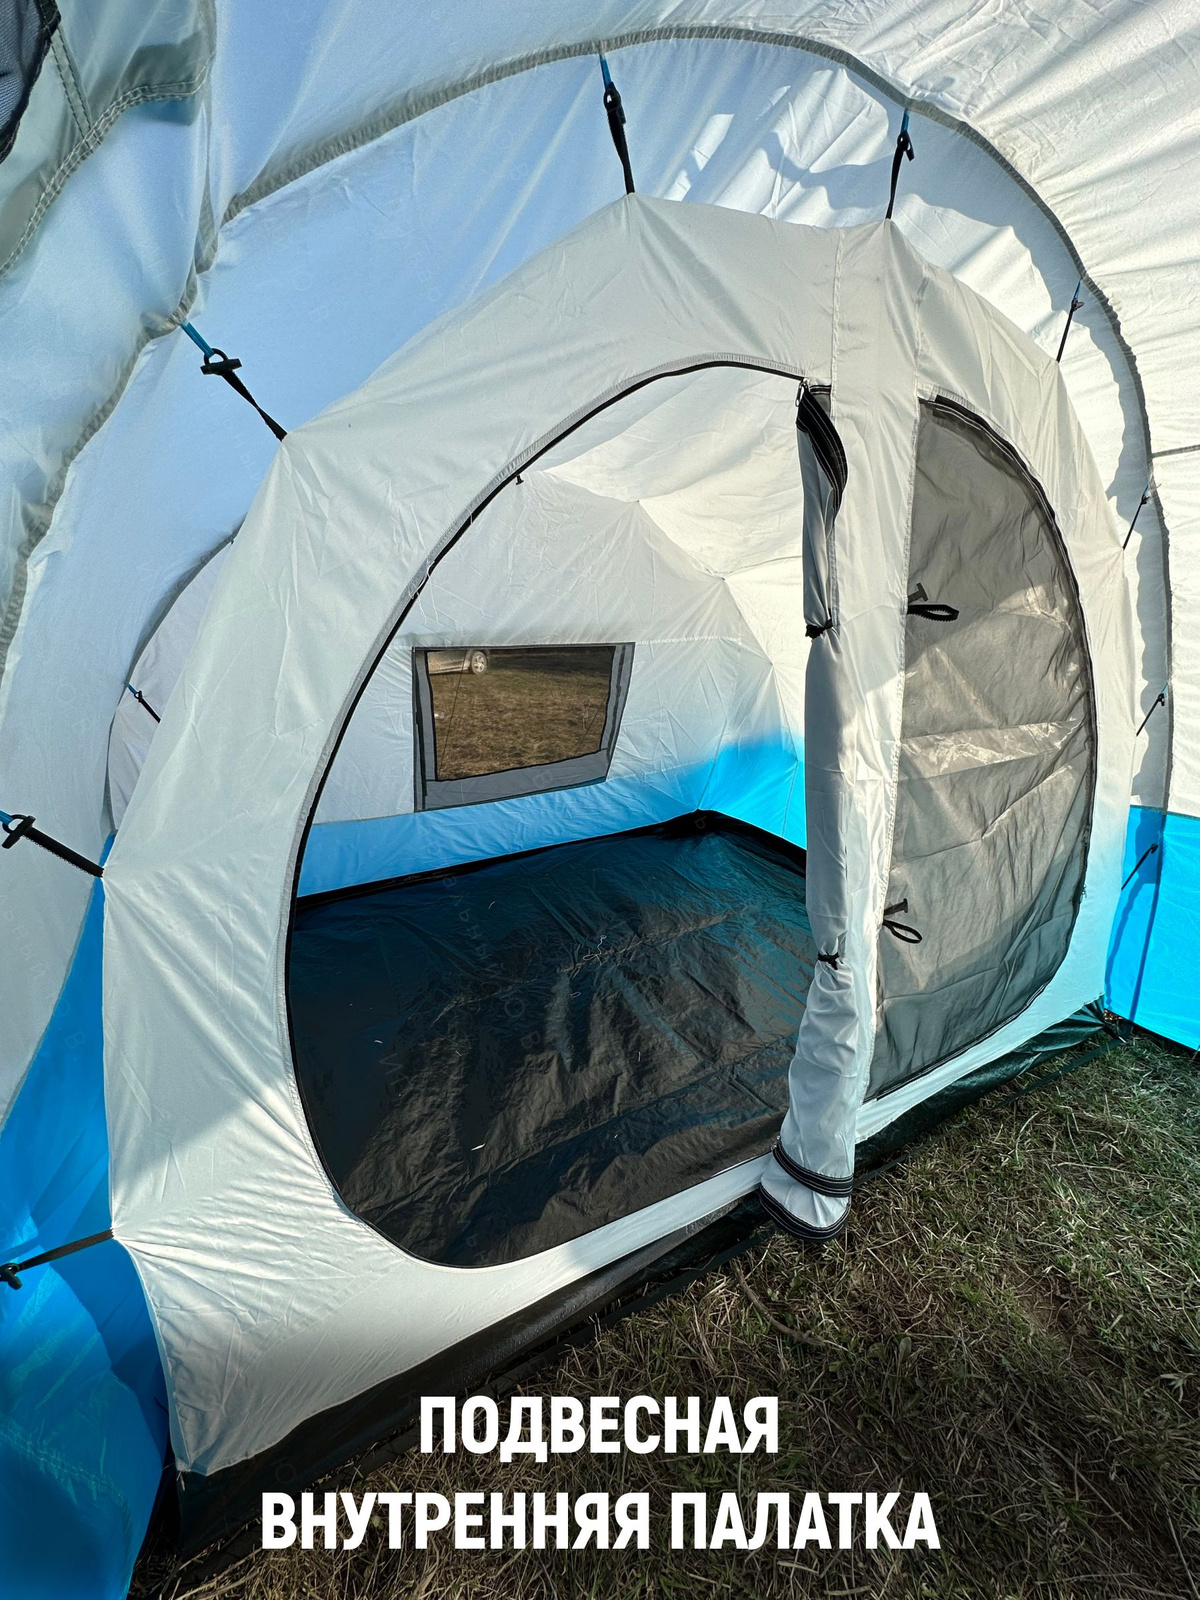 Внутренняя палатка у этой модели - подвесная. Не имеет каркаса на дугах. У нее два отдельных входа с москитной сеткой и внутри удобные кармашки для мелочей.